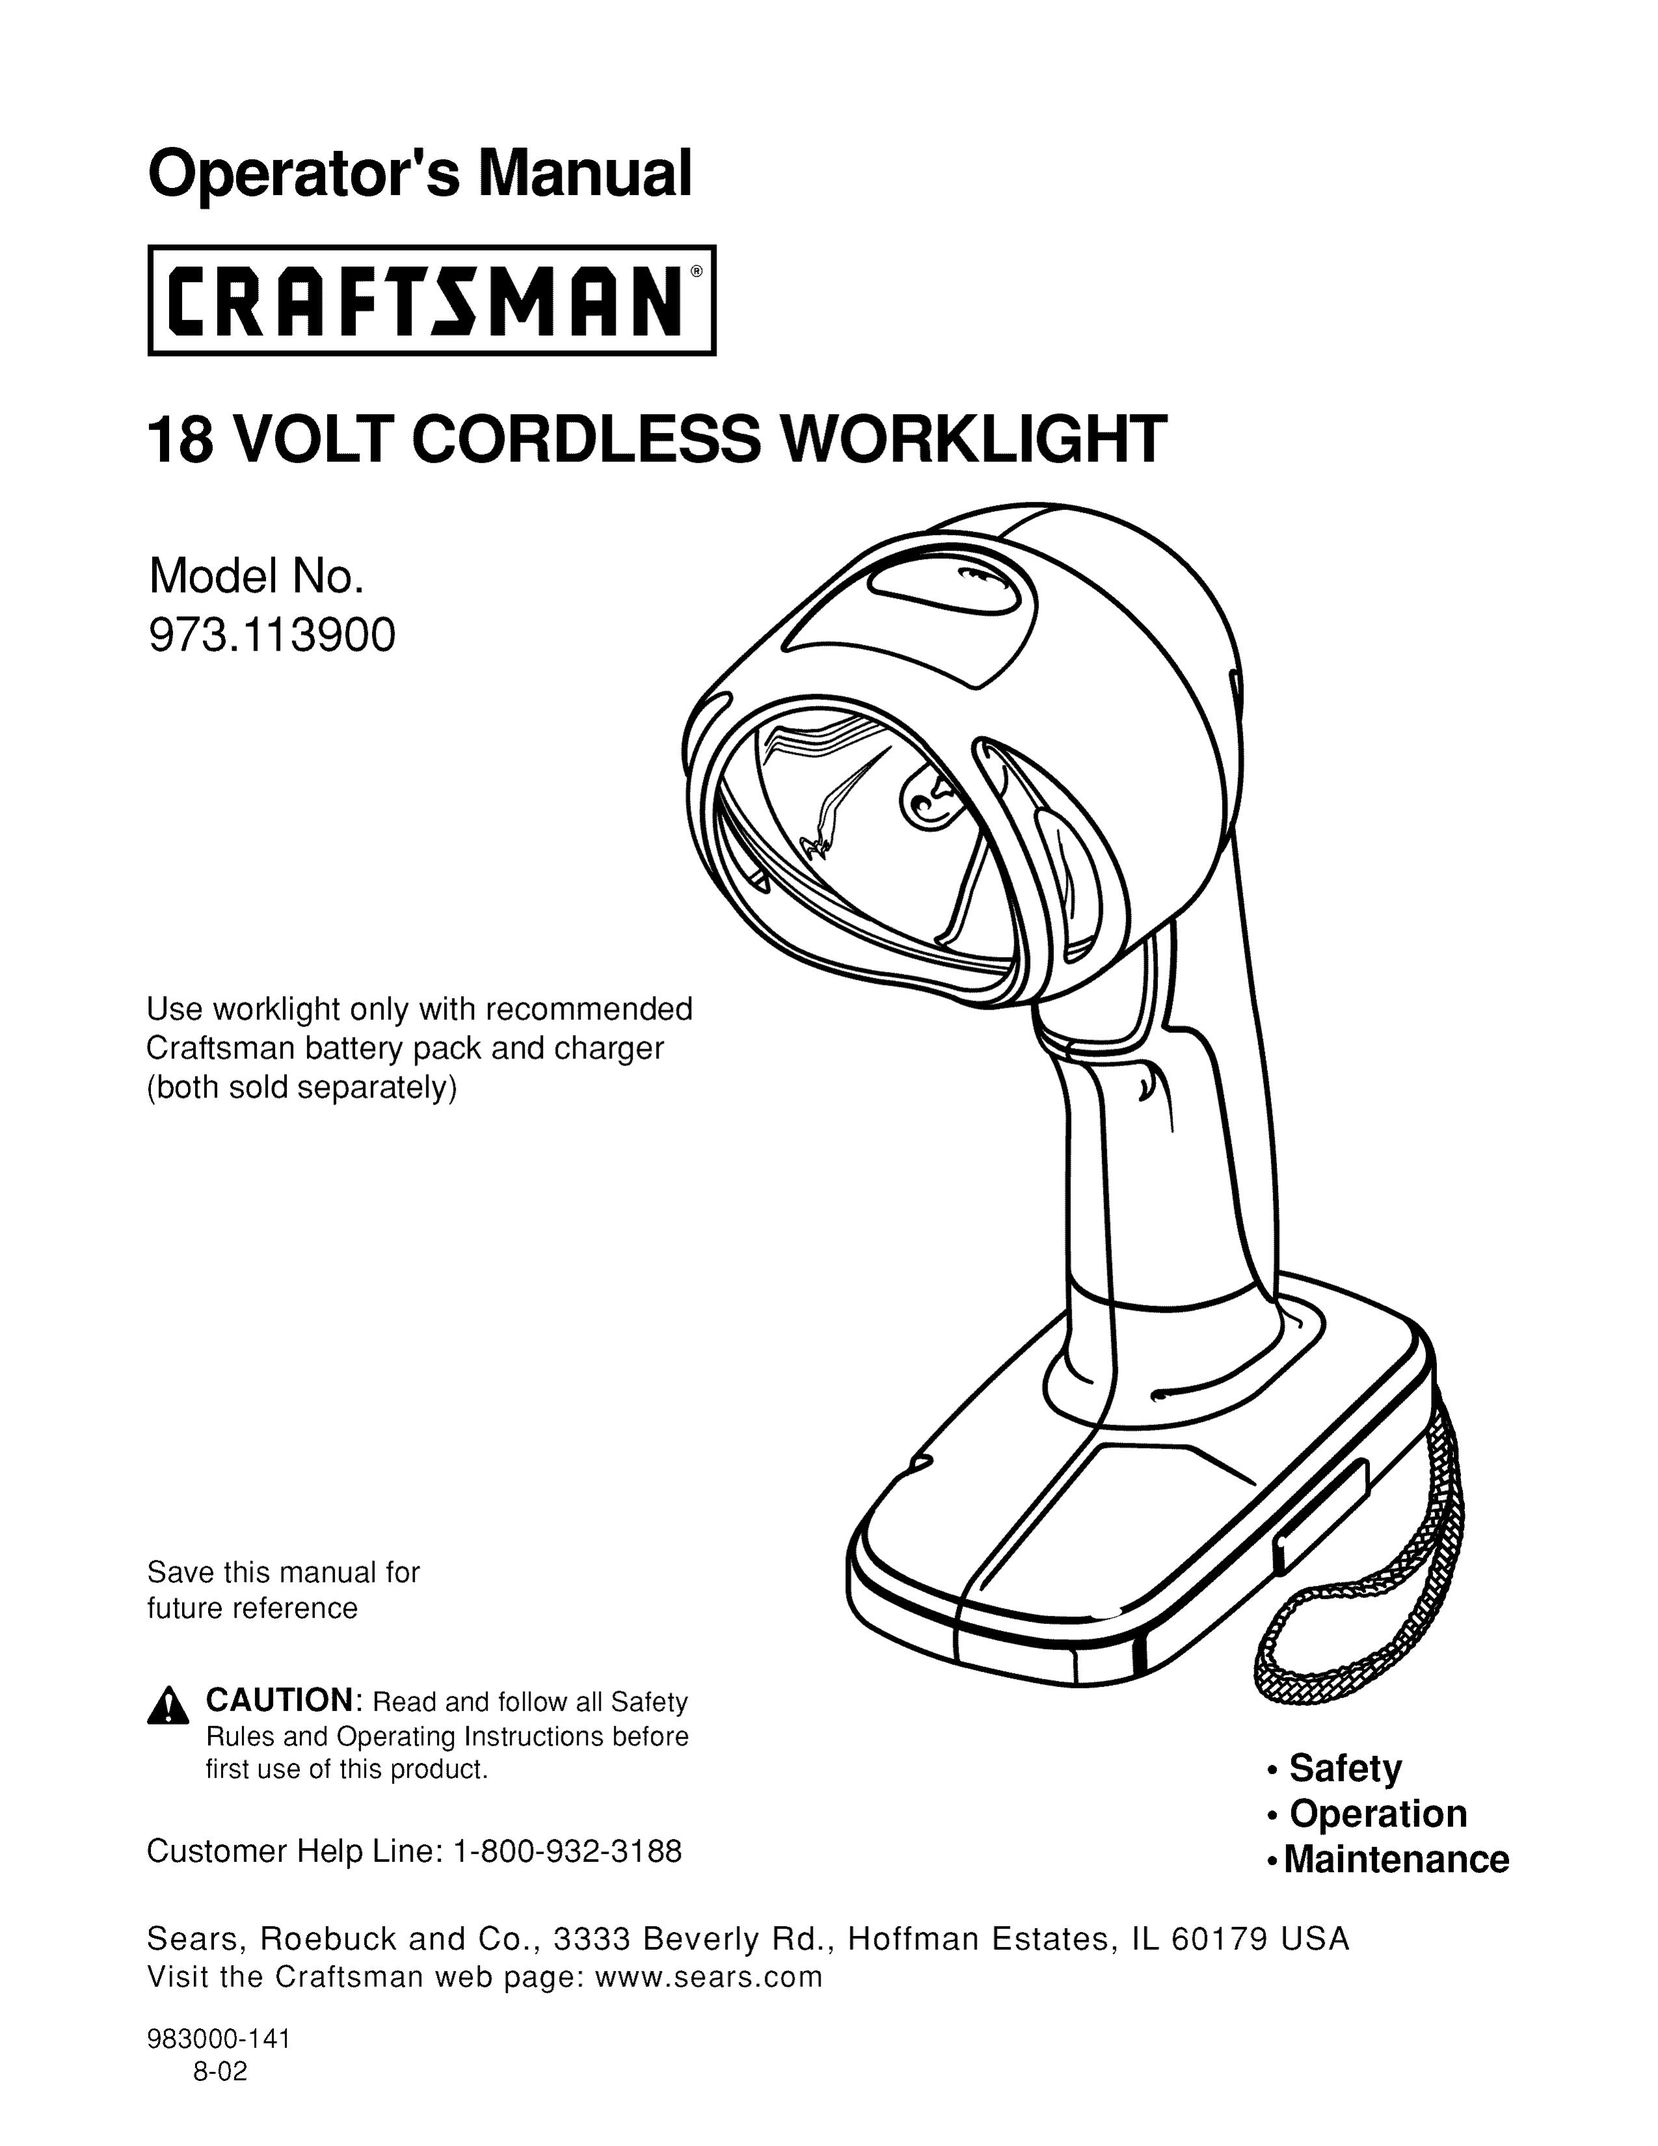 Craftsman 973.113900 Work Light User Manual